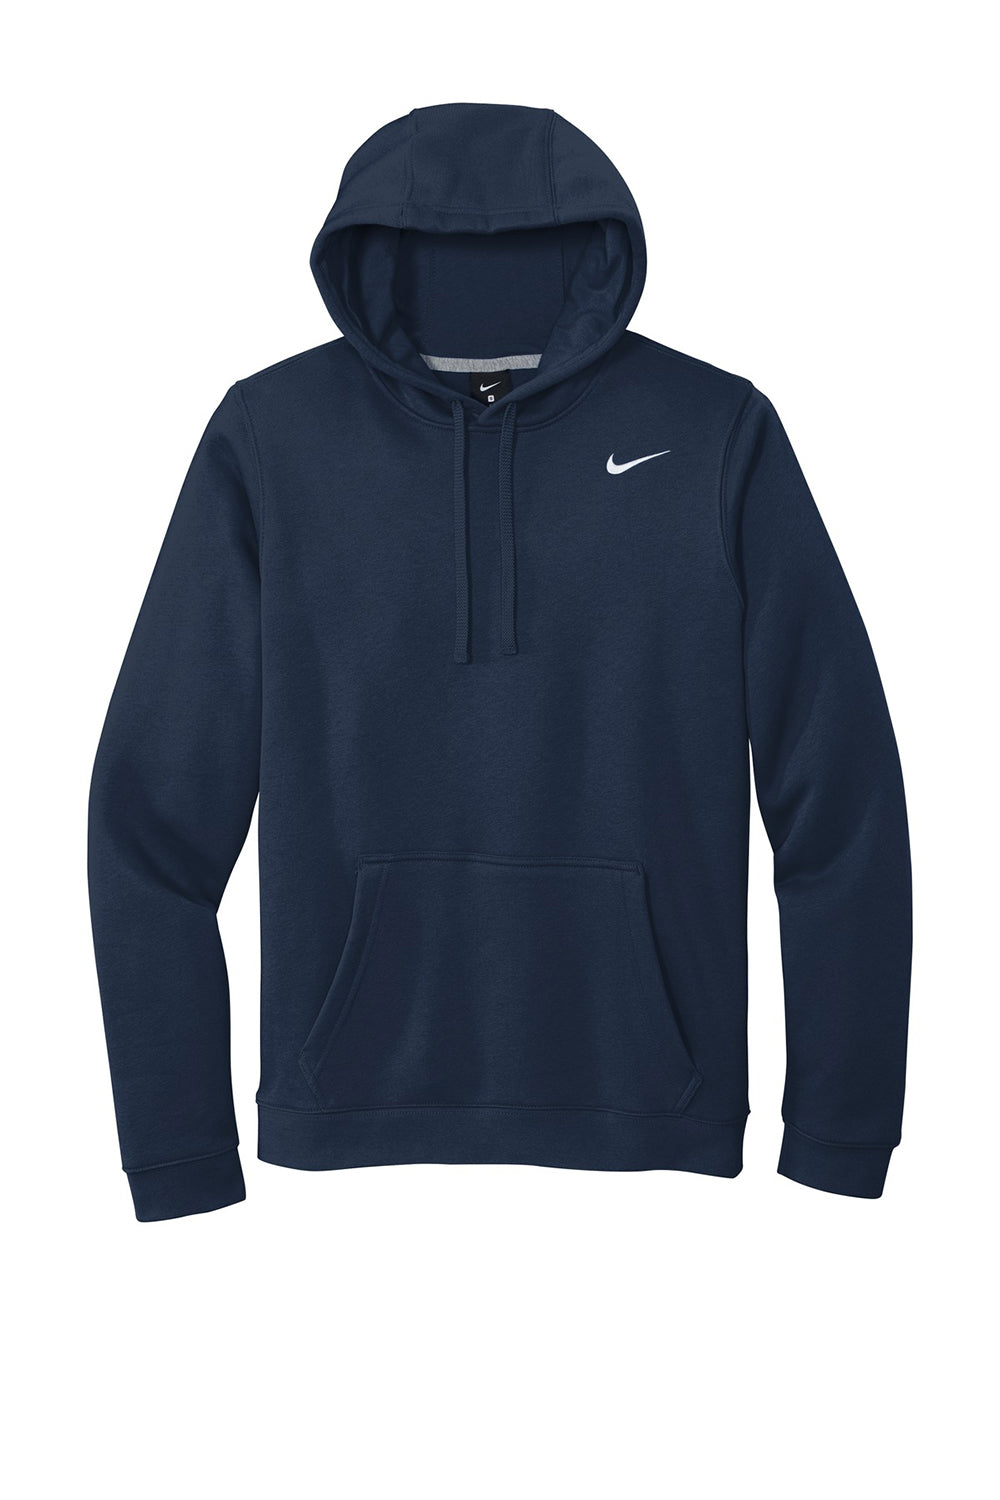 Nike CJ1611 Mens Club Fleece Hooded Sweatshirt Hoodie Navy Blue Flat Front